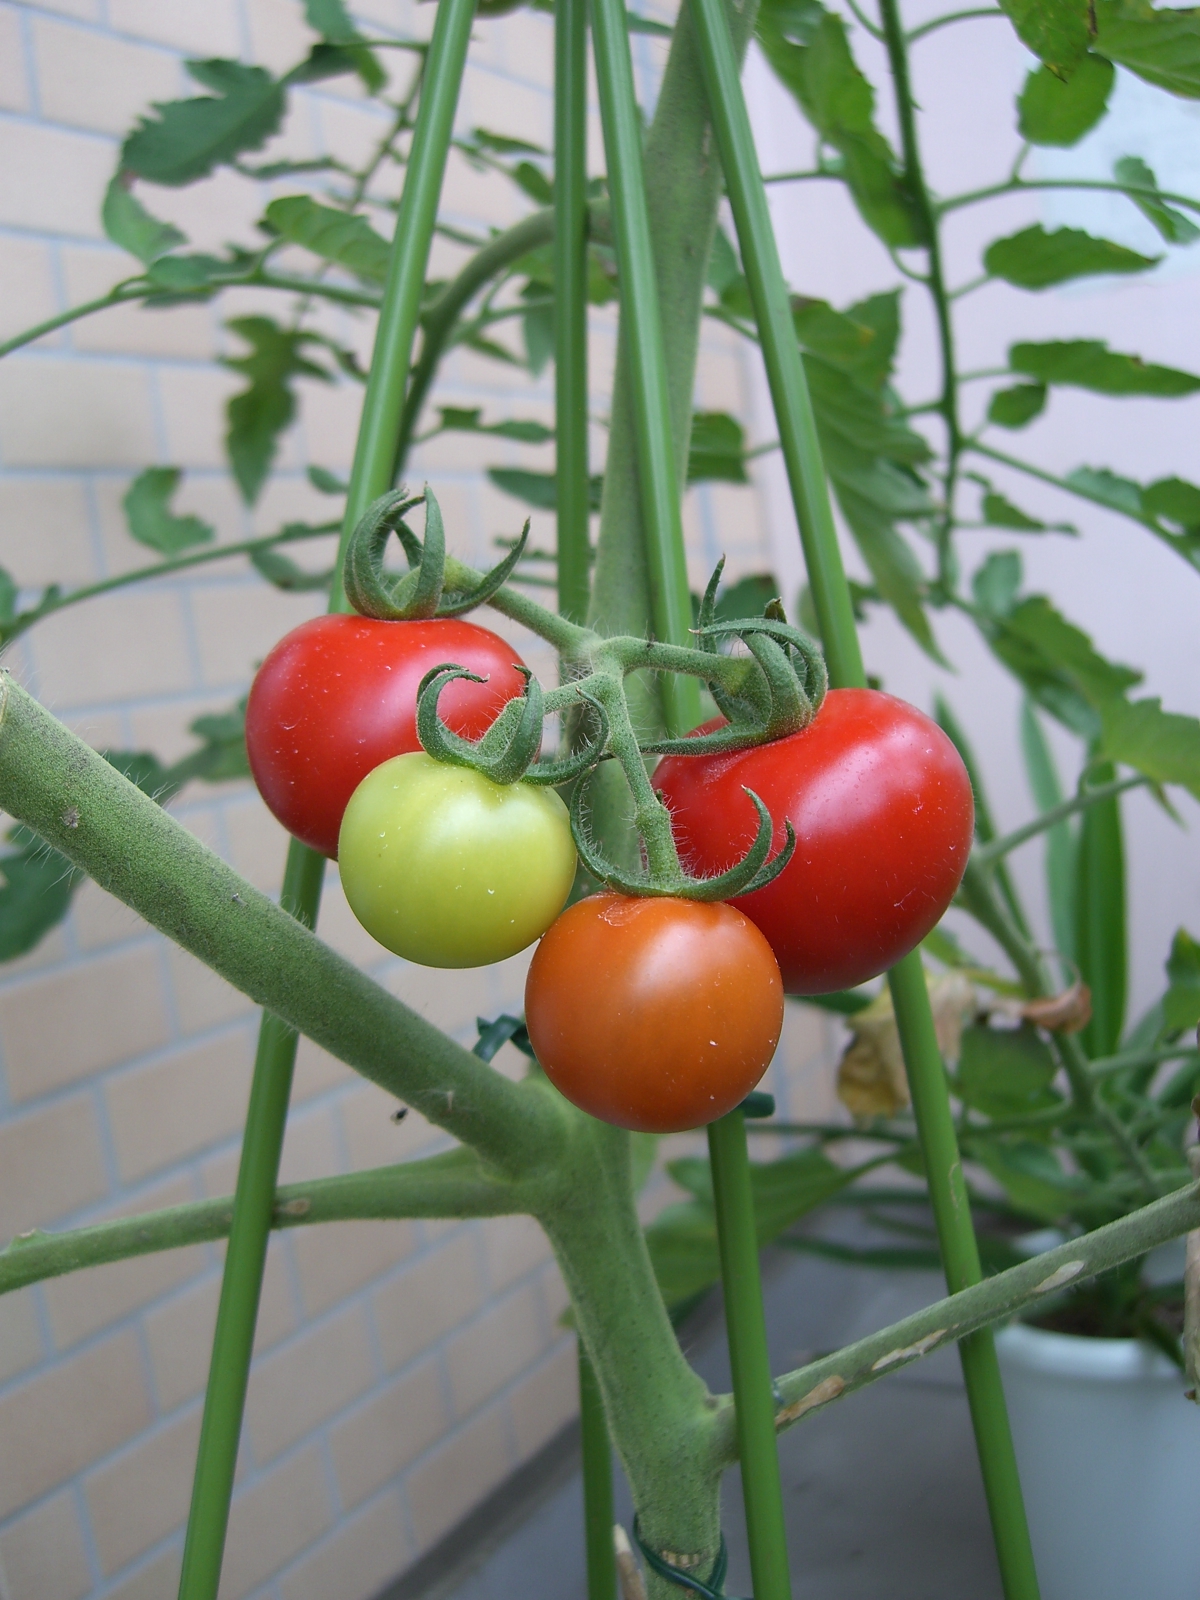 トマト成長過程7 頭の片隅